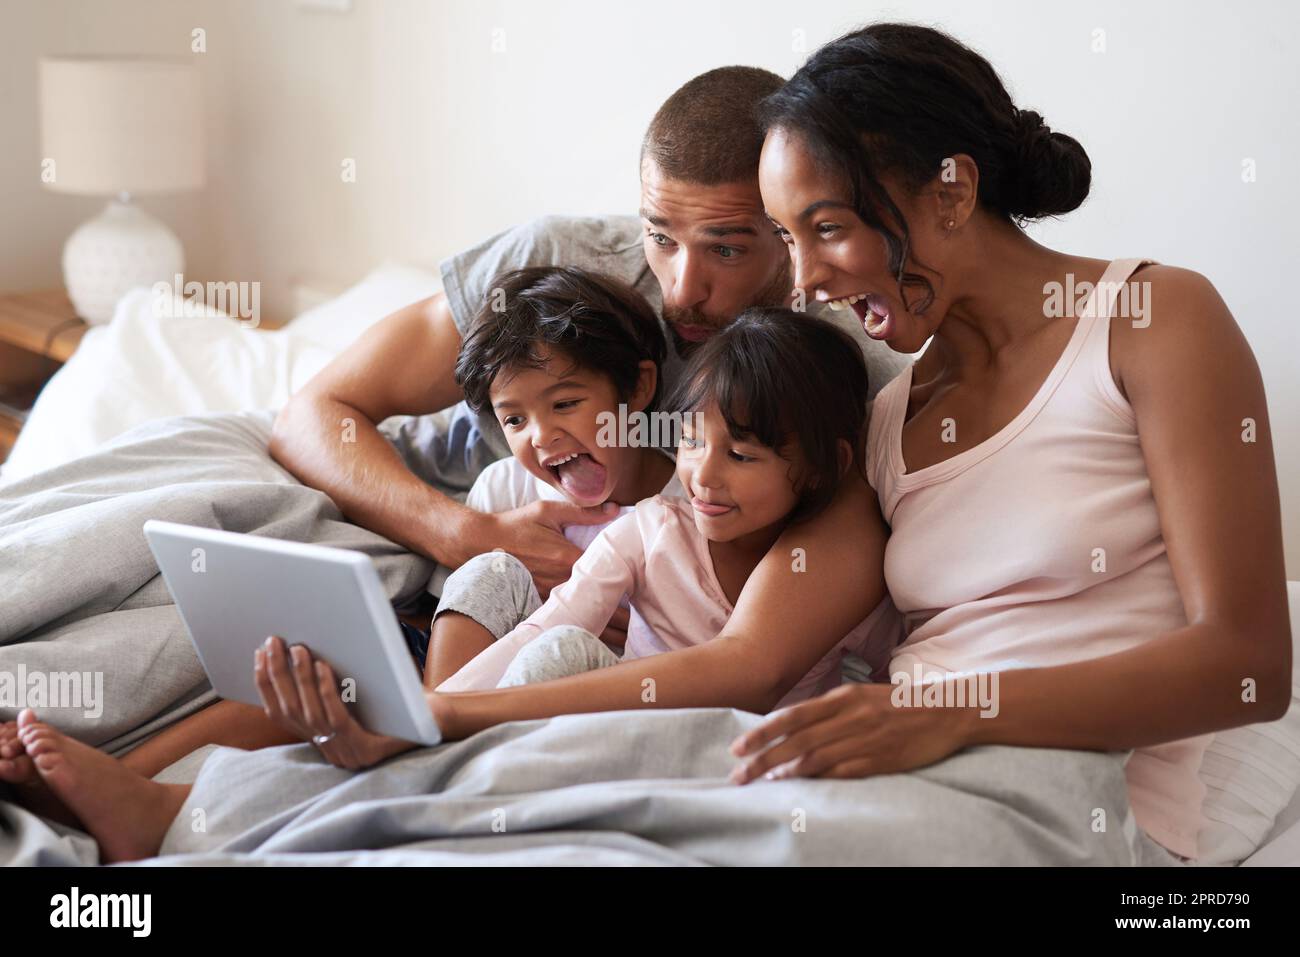 Cattura ogni momento meraviglioso con loro. Una famiglia giovane di quattro persone che prende selfie con un tablet digitale in camera da letto. Foto Stock